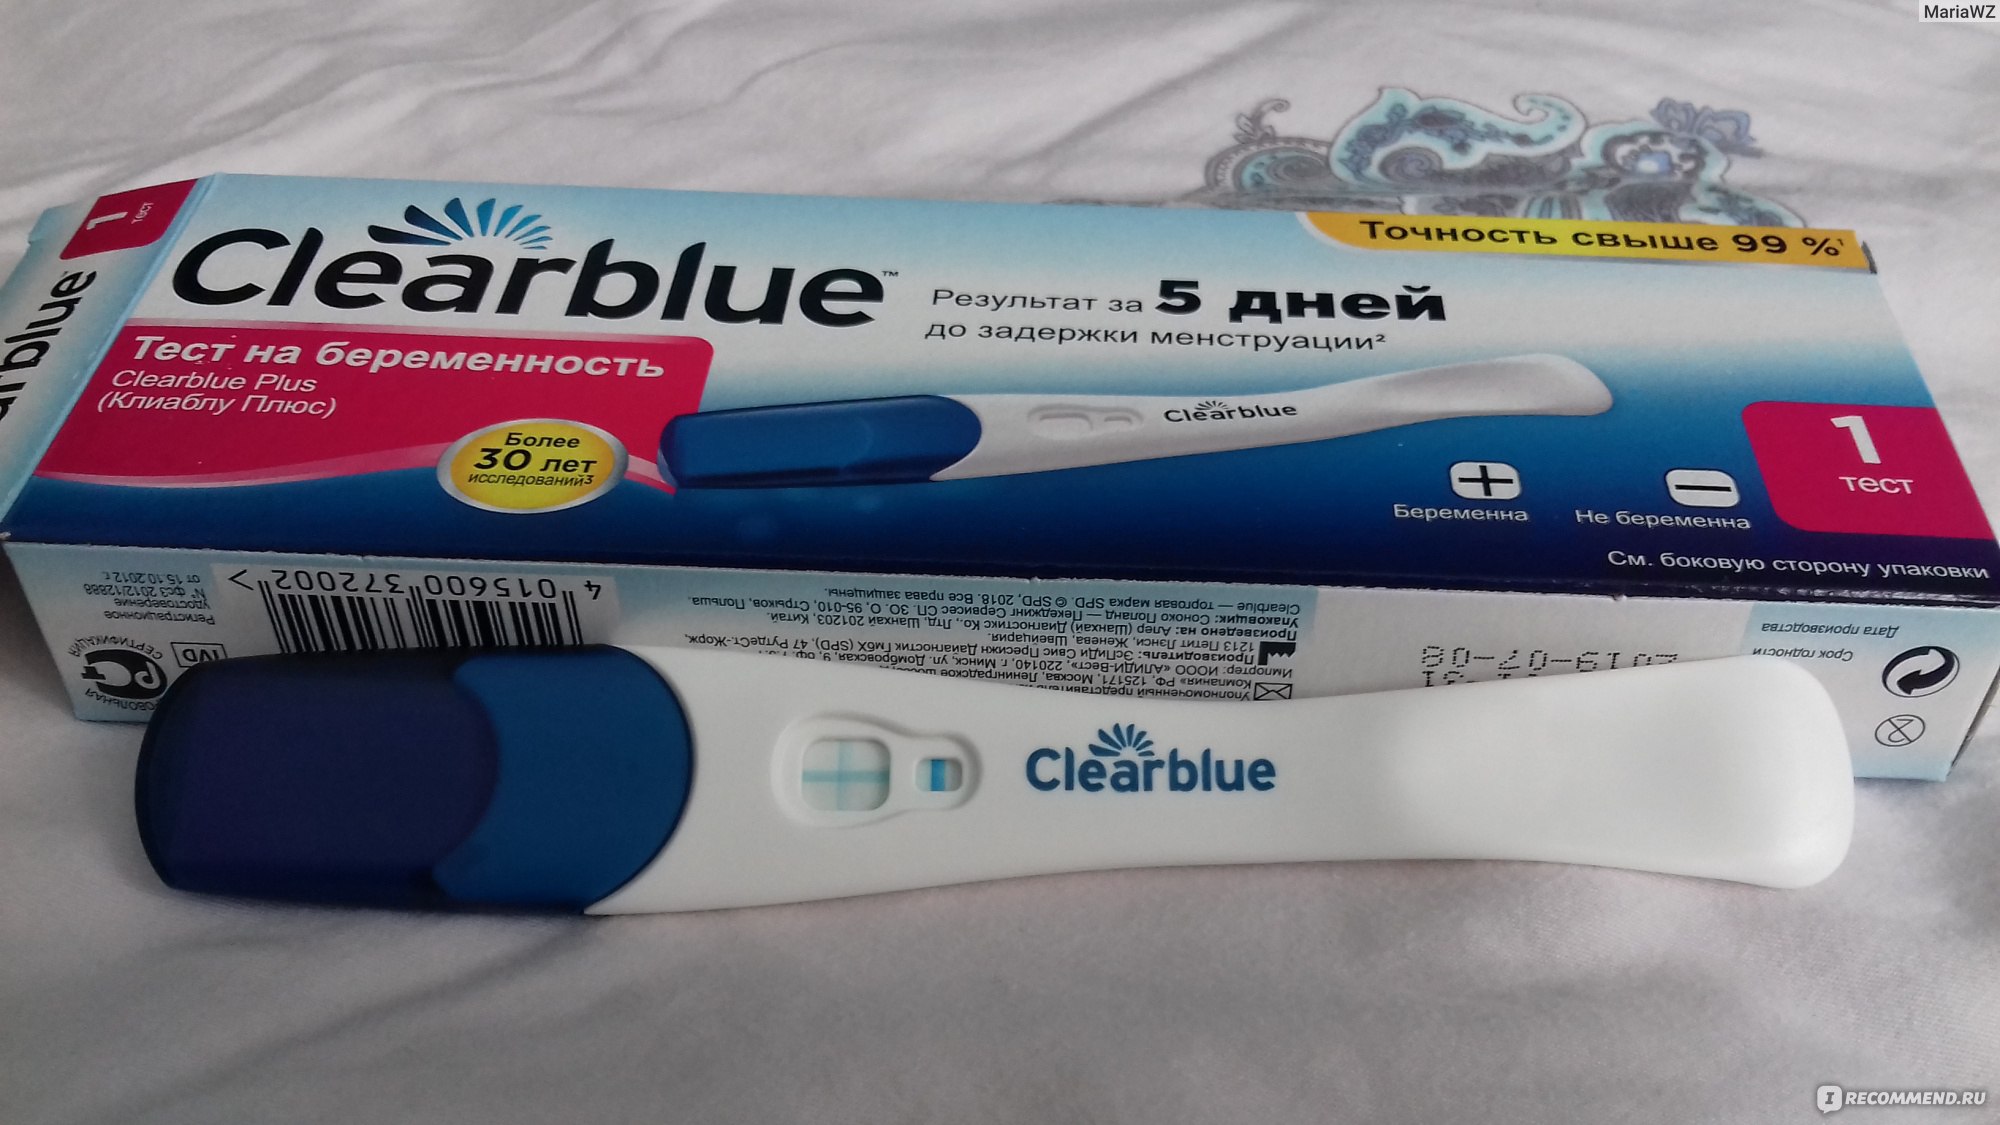 Тест clearblue до задержки. Тест на беременность Clearblue. Тест Plus на беременность, 1 шт., Clearblue. Тест Clearblue за 5 дней. Clearblue тест на беременность 5 дней до задержки.